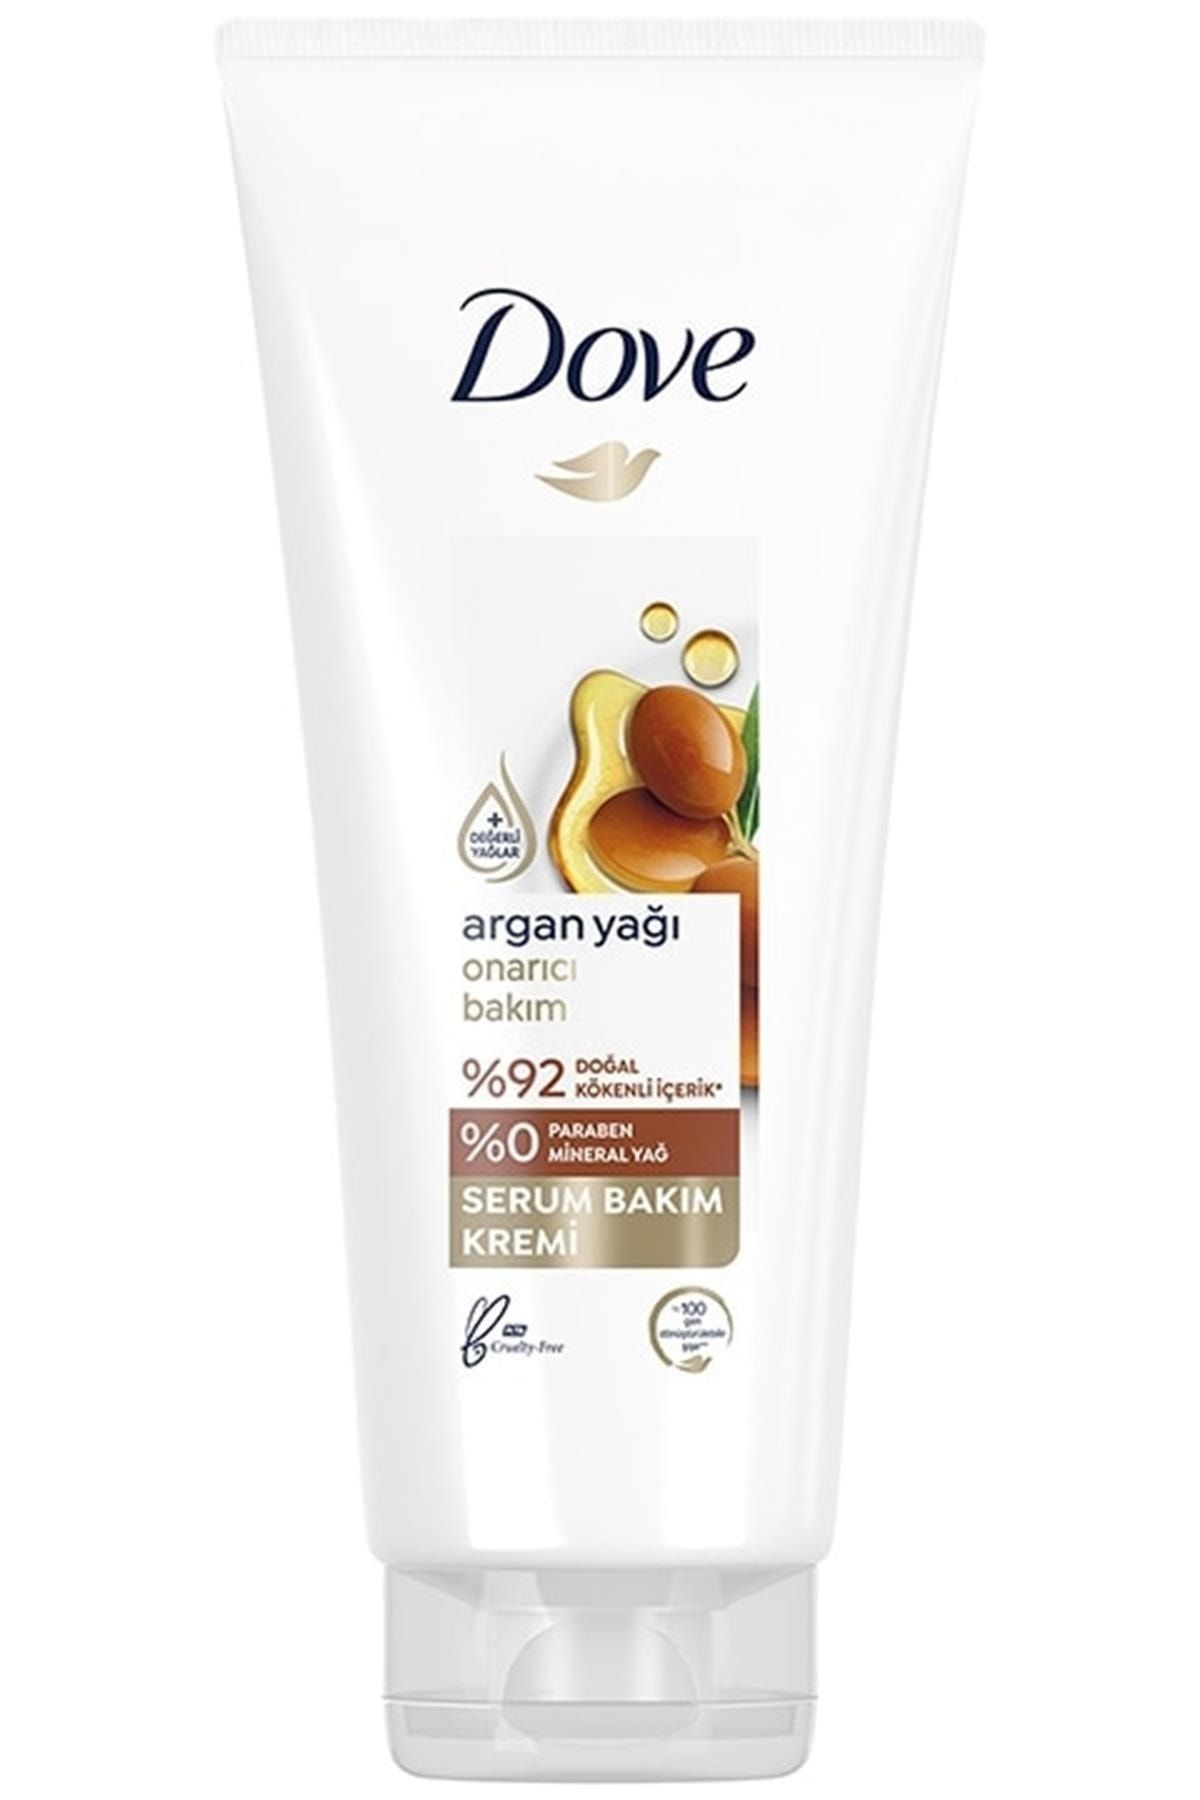 Dove Argan Yağı Onarıcı Bakım Serum Saç Bakım Kremi 170 Ml